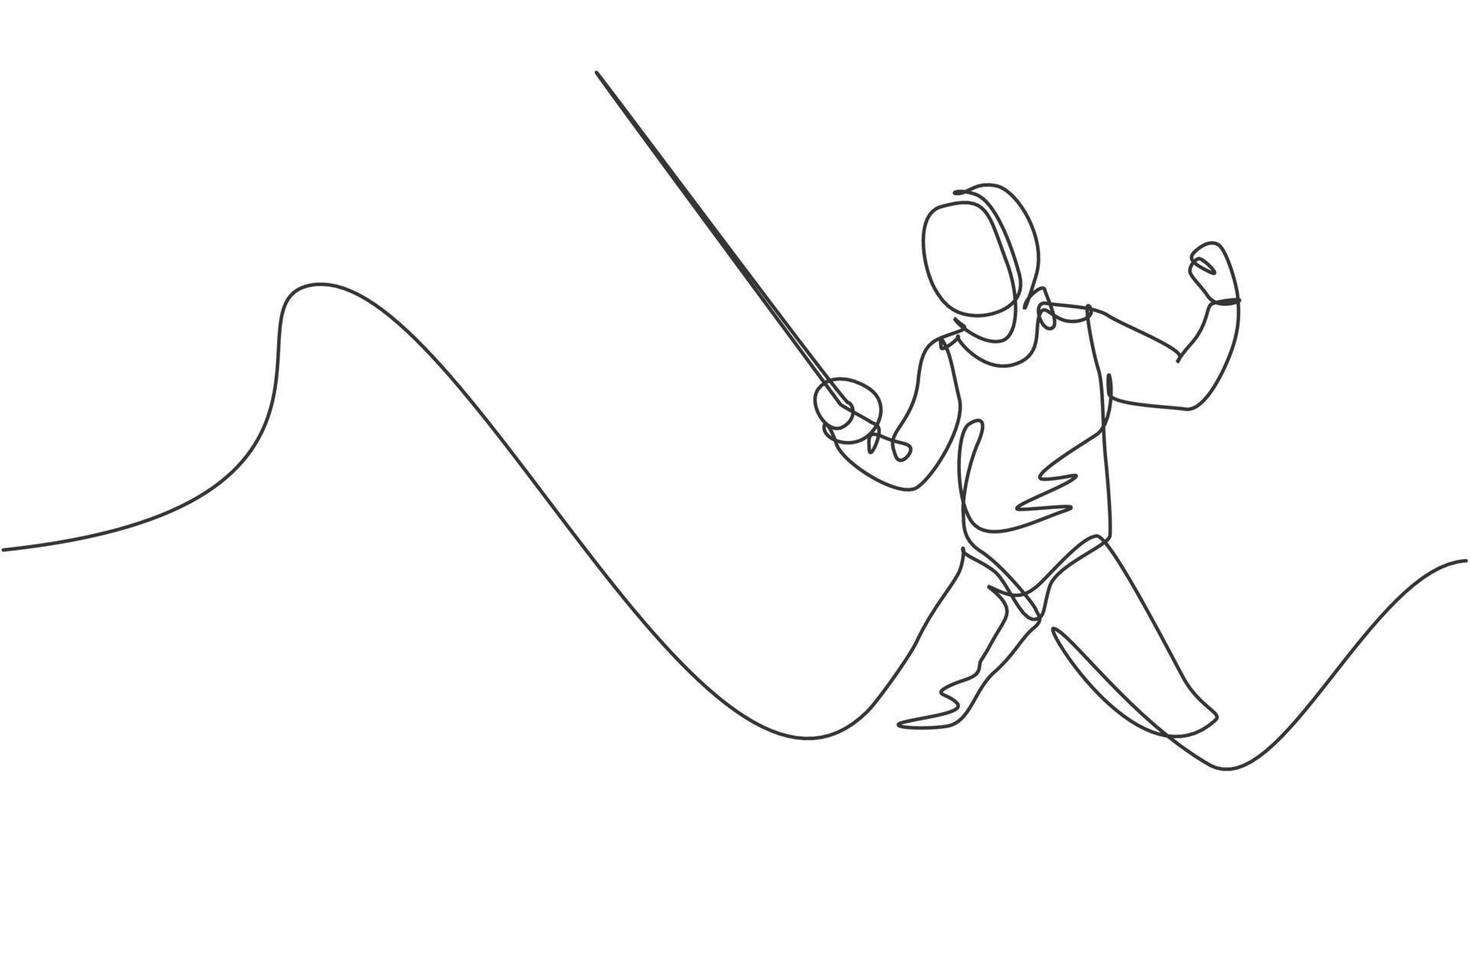 un dibujo de una sola línea de un joven atleta esgrimista disfrazado de esgrima ejerciendo movimiento en la ilustración vectorial de la arena deportiva. concepto de deporte combativo y de lucha. diseño moderno de dibujo de línea continua vector